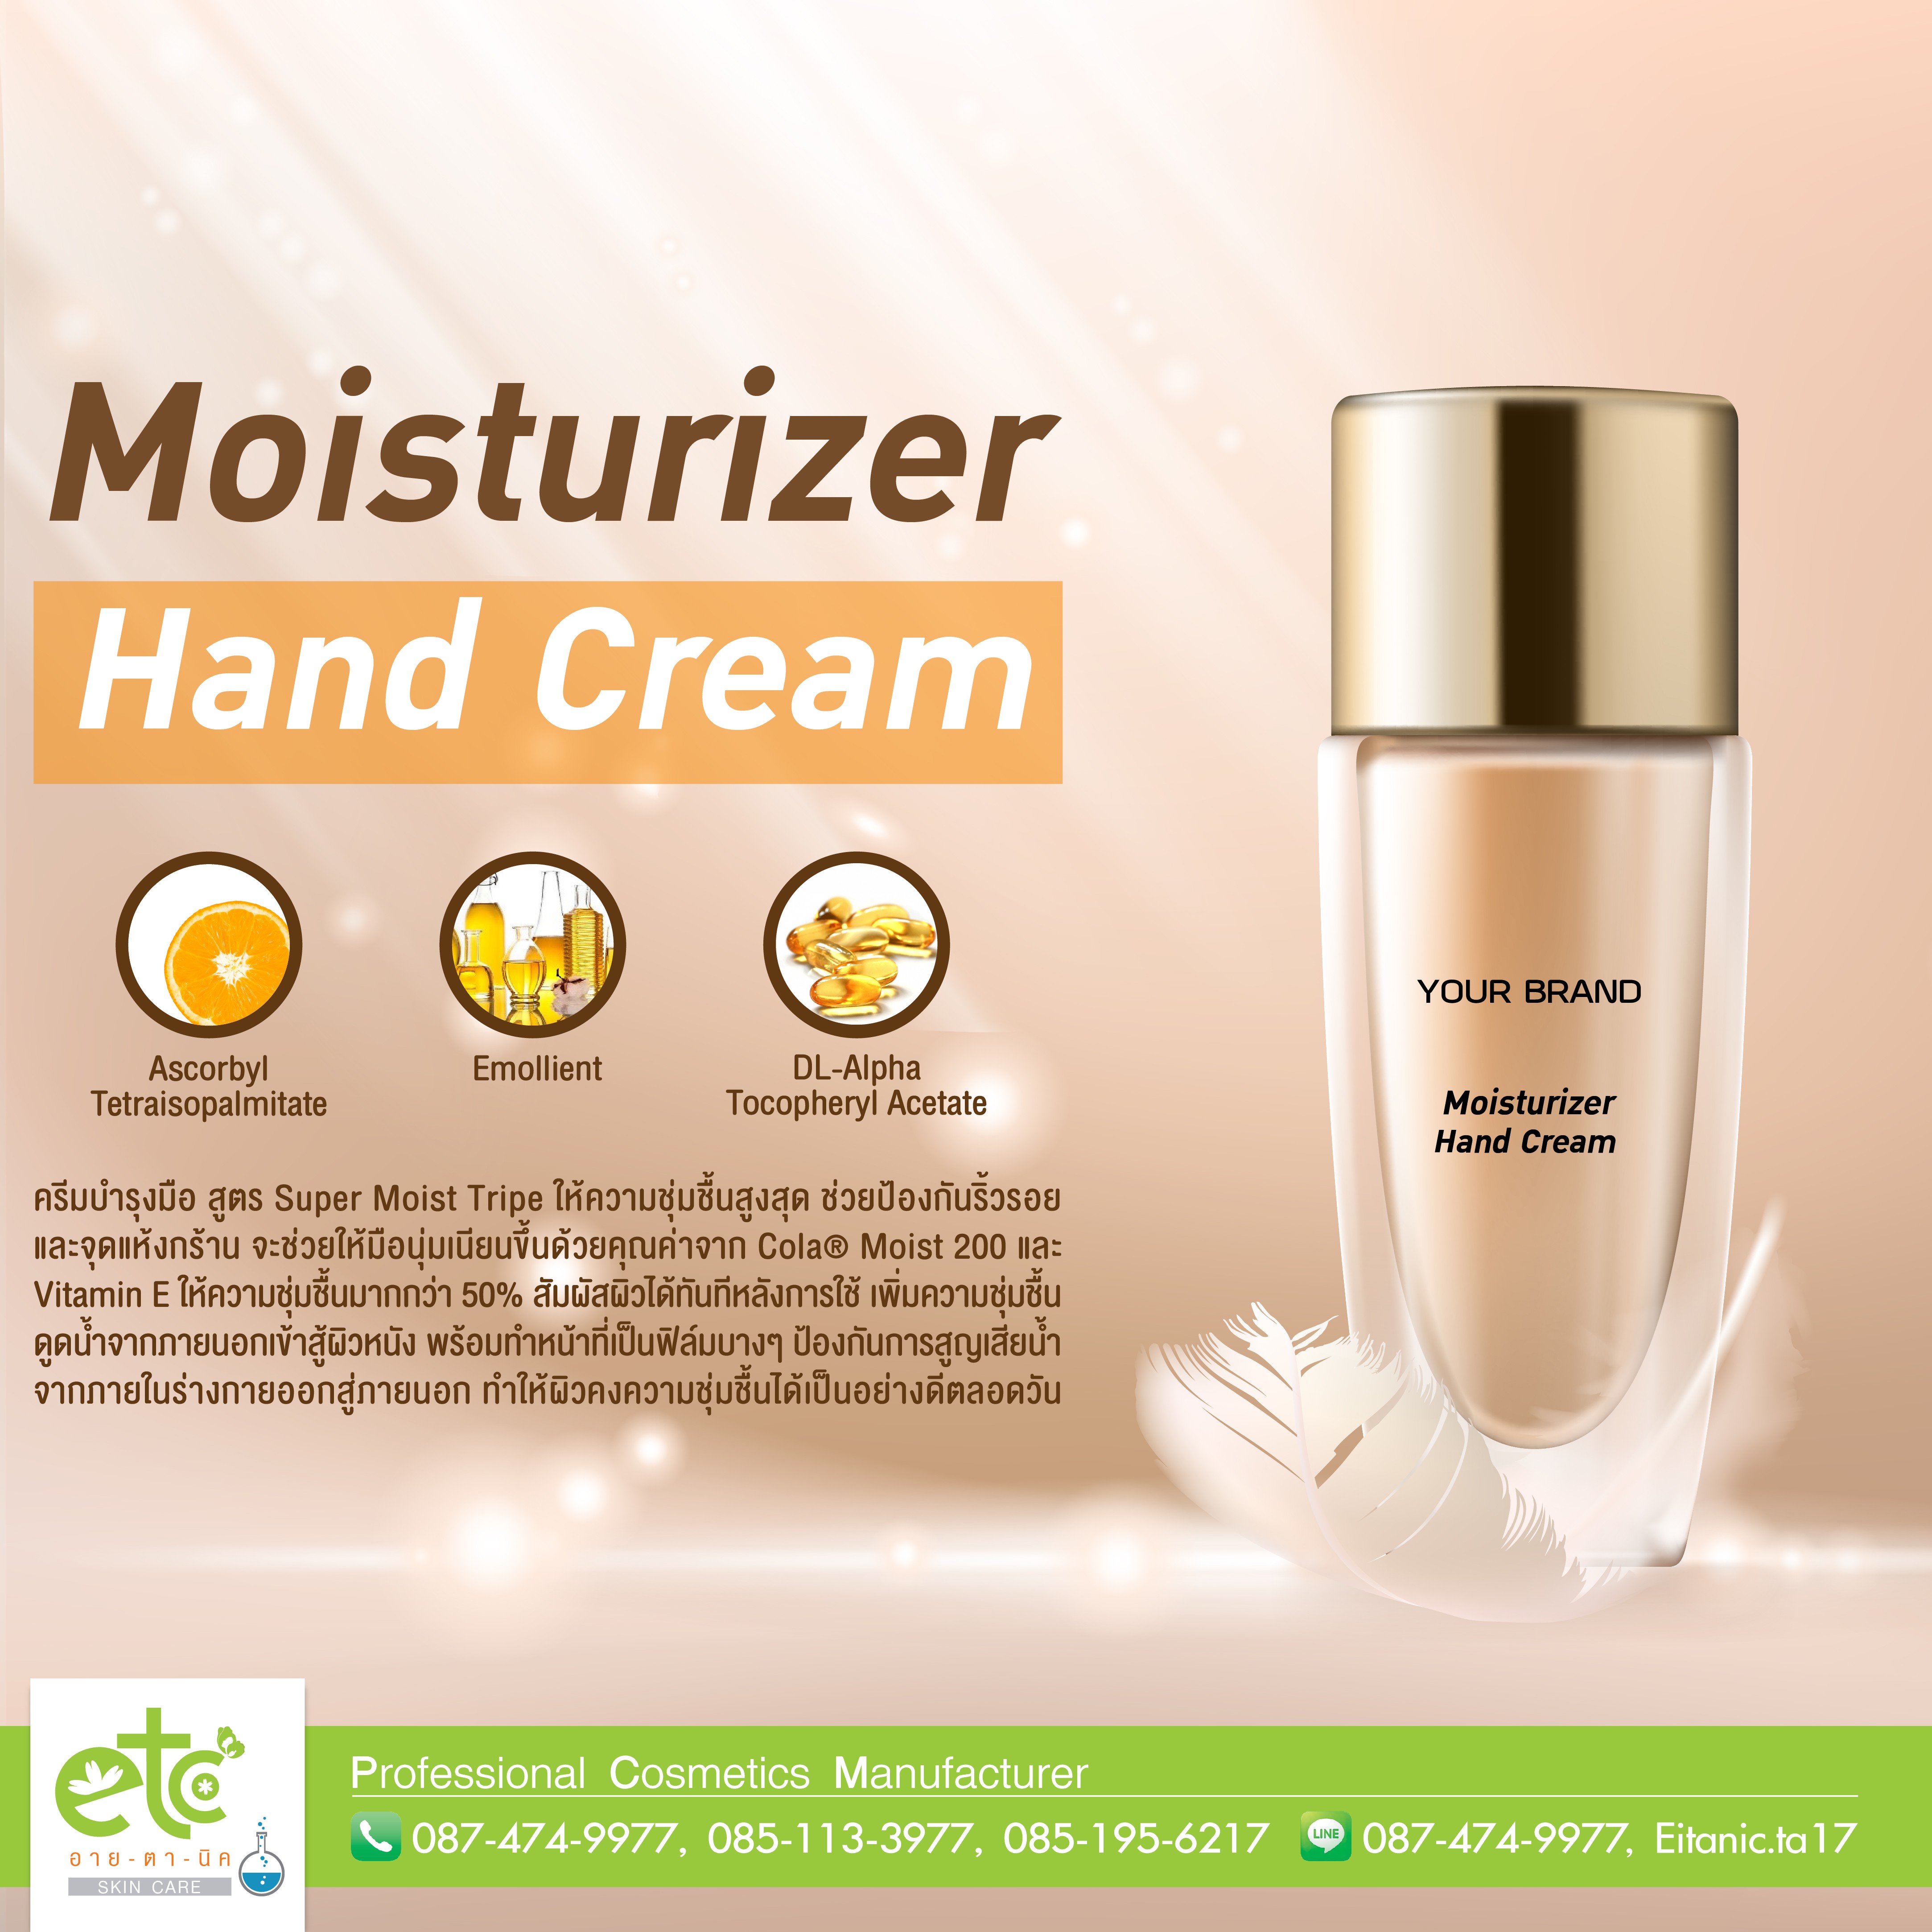 Moisturizer Hand Cream